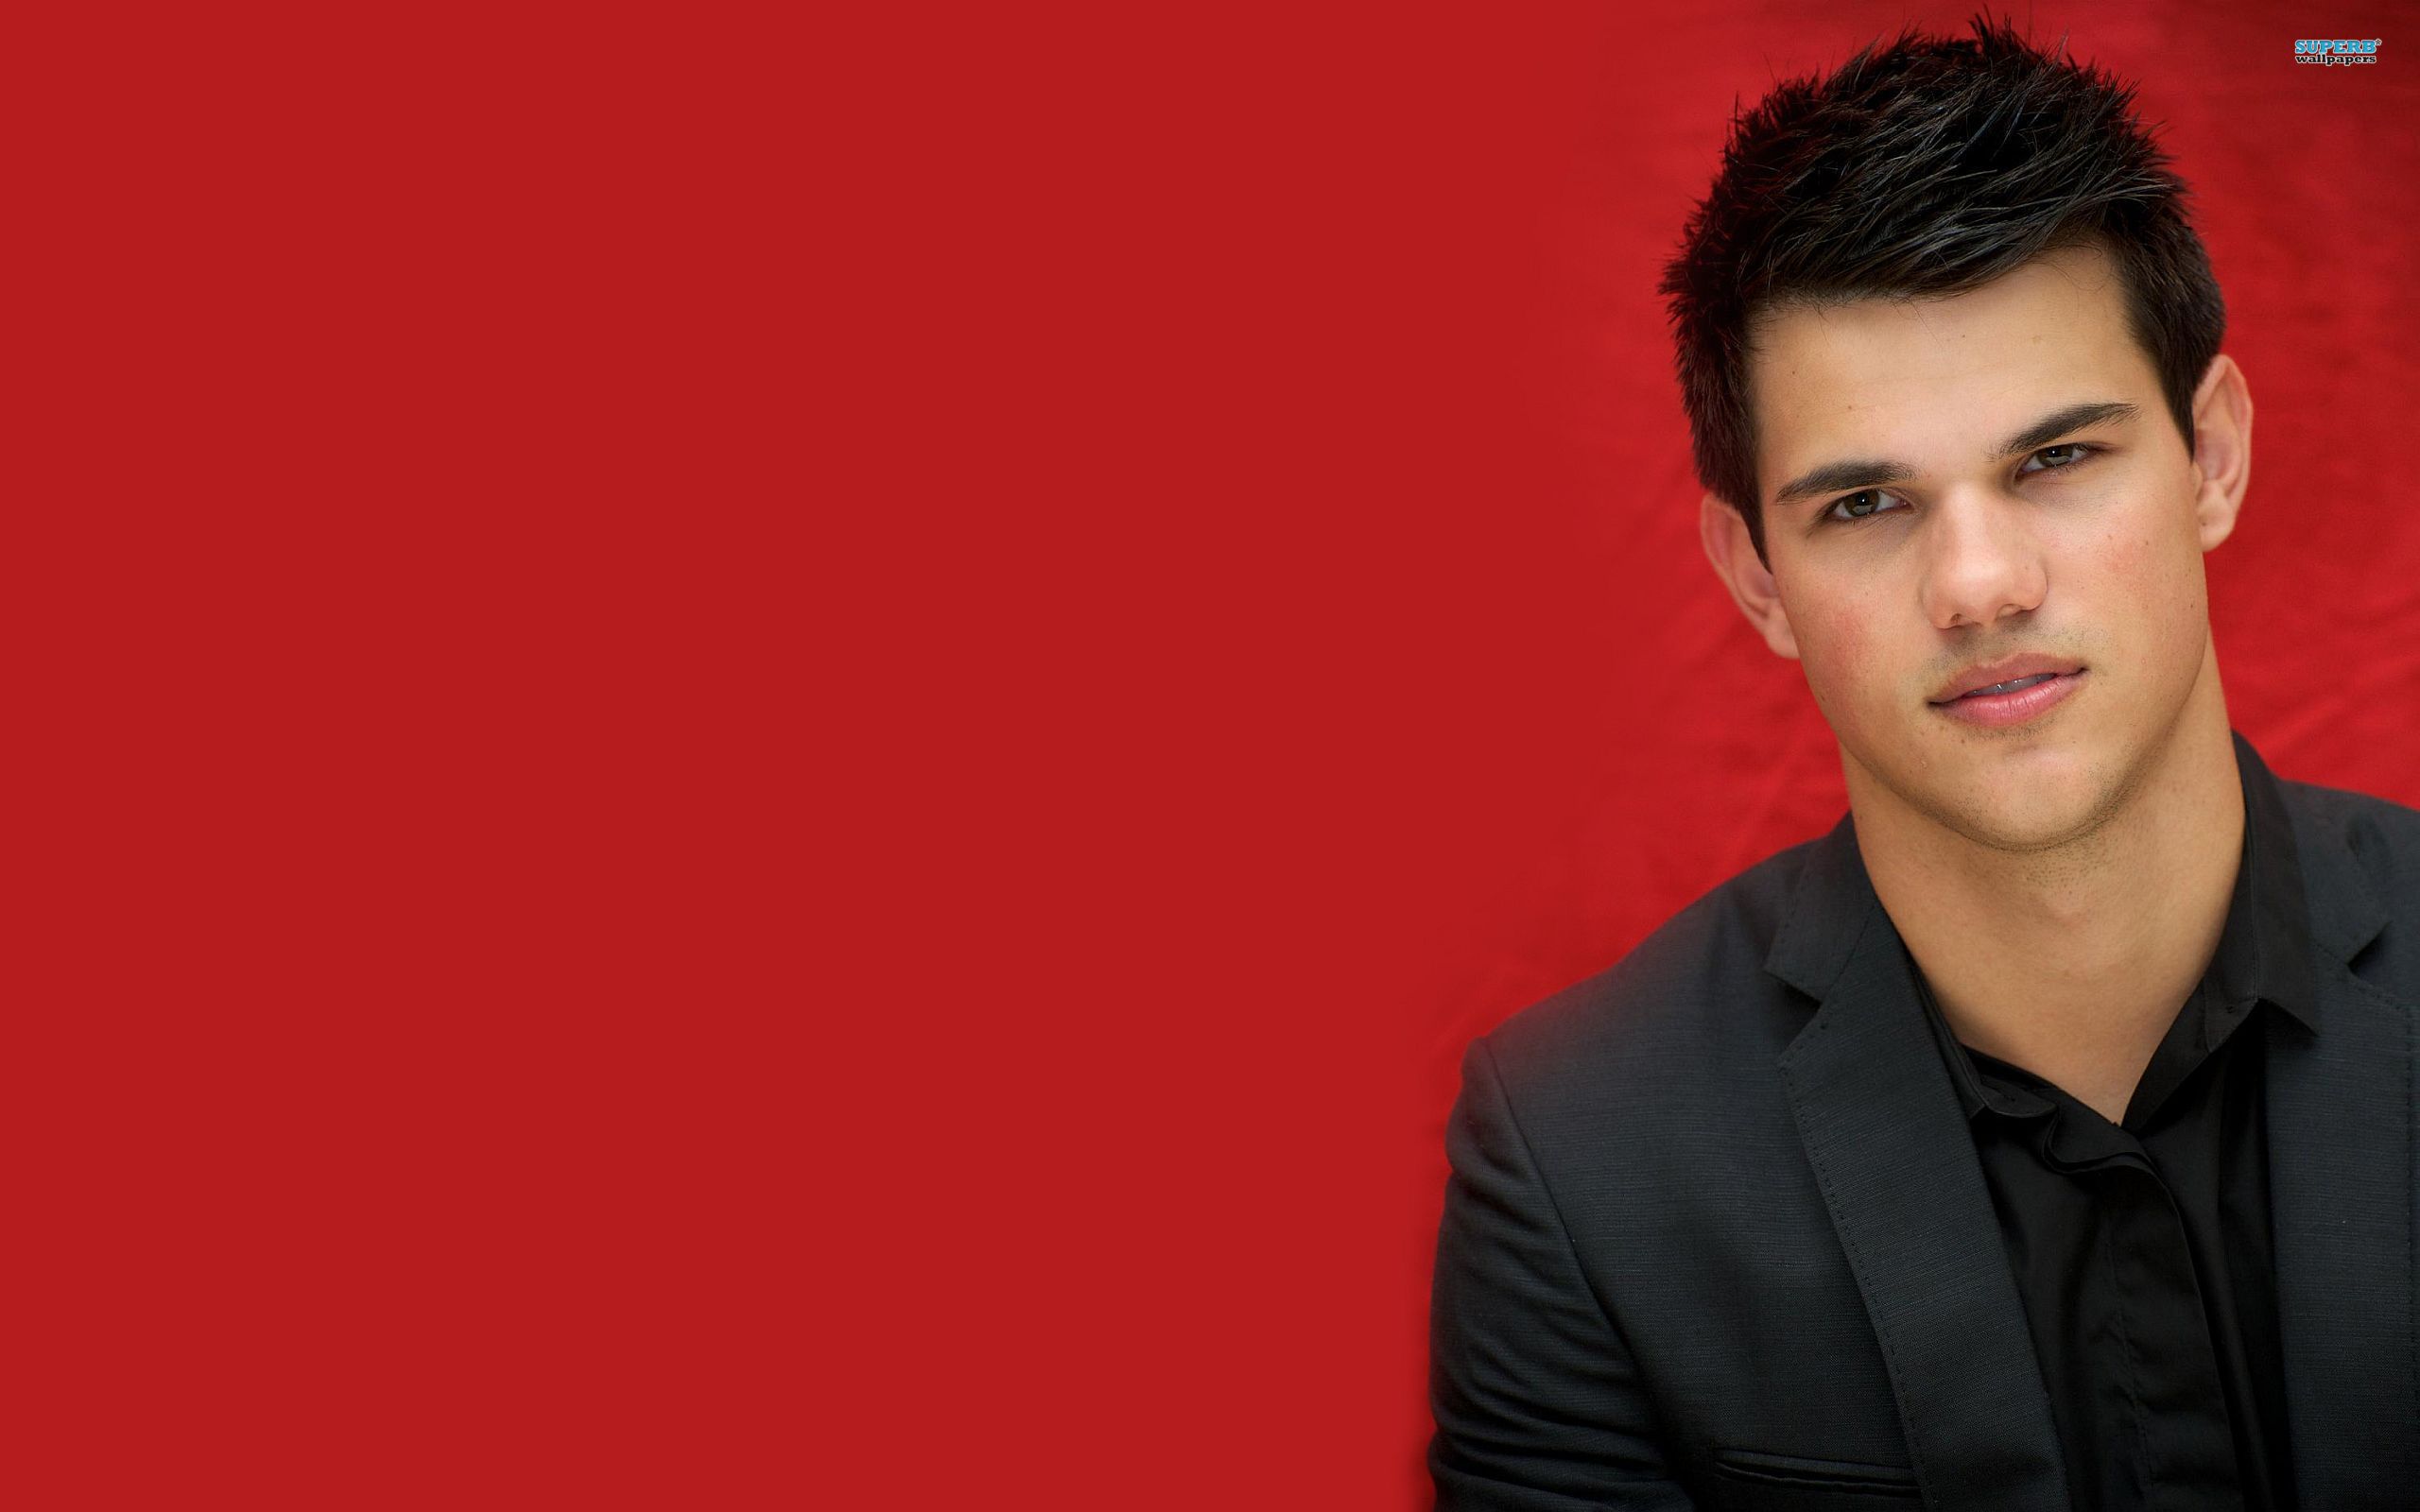 Taylor Lautner Photoshoot HD Wallpaper Of Celebrities